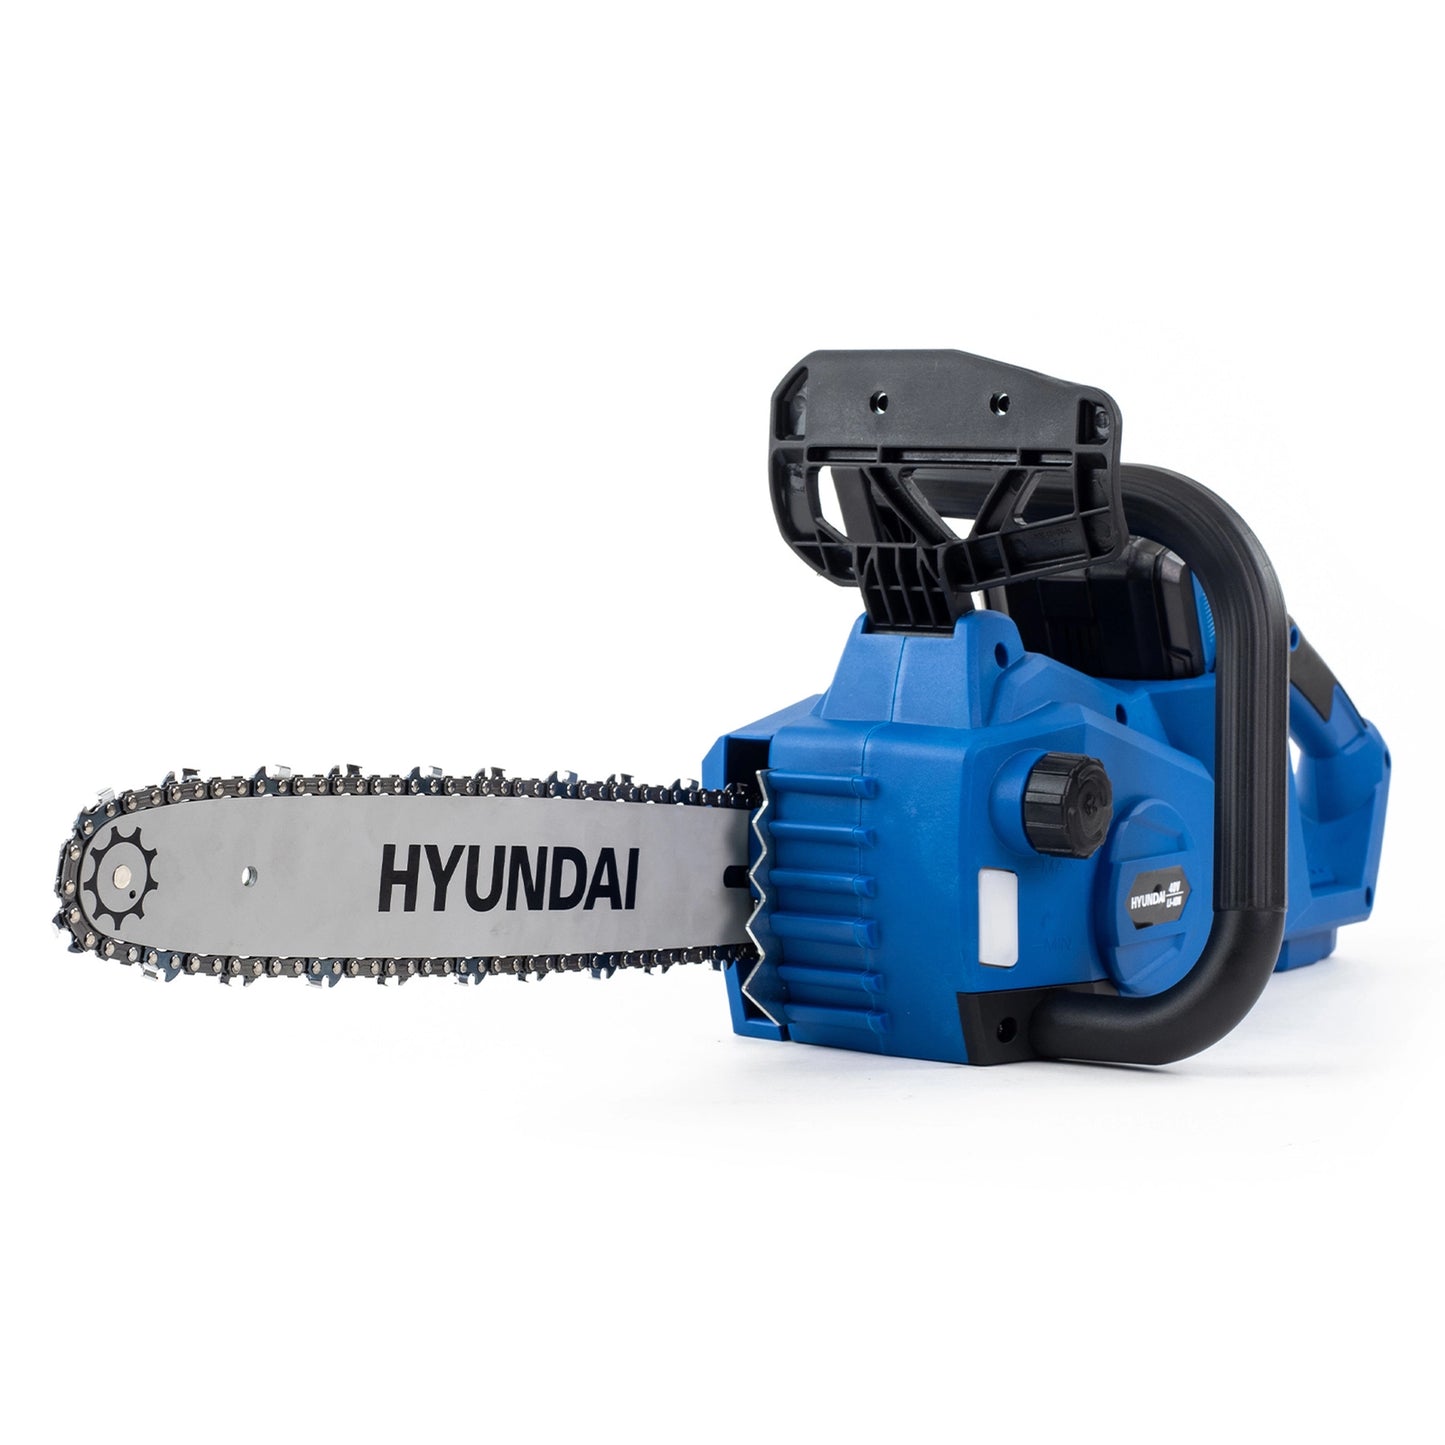 Hyundai HYC40LI 40V Cordless Chainsaw 14"